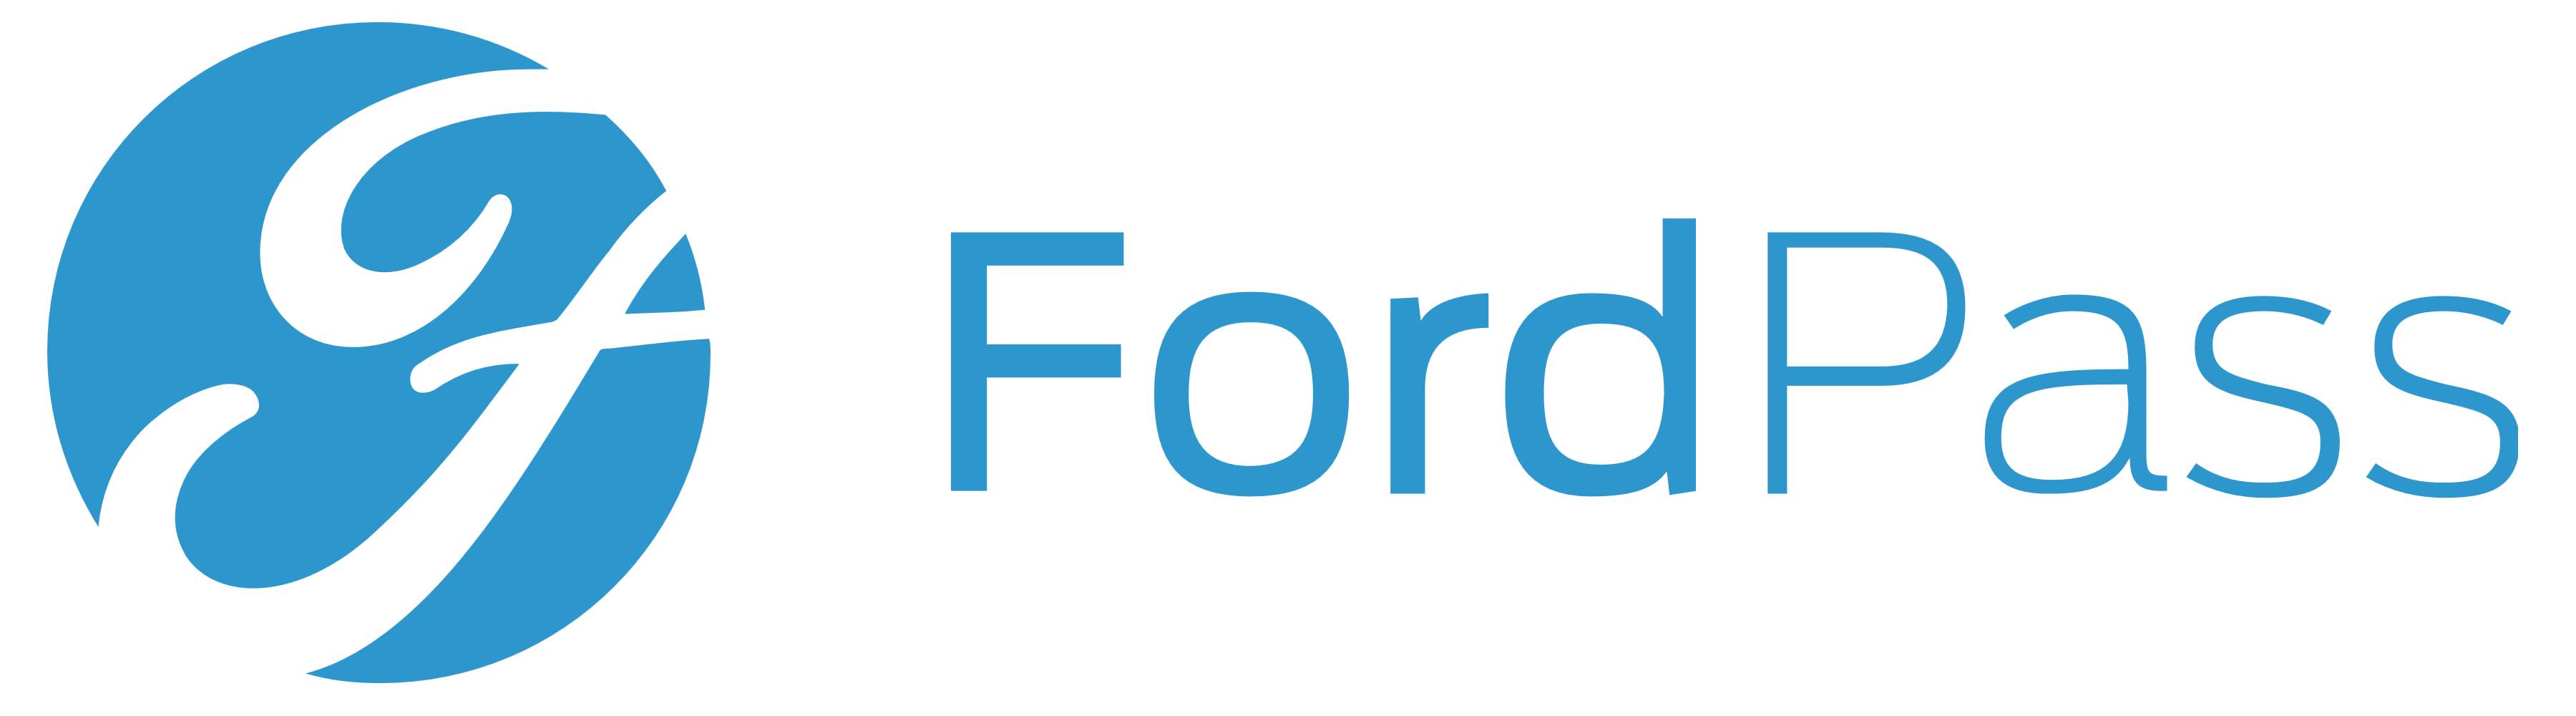 FordPass logo, logotype